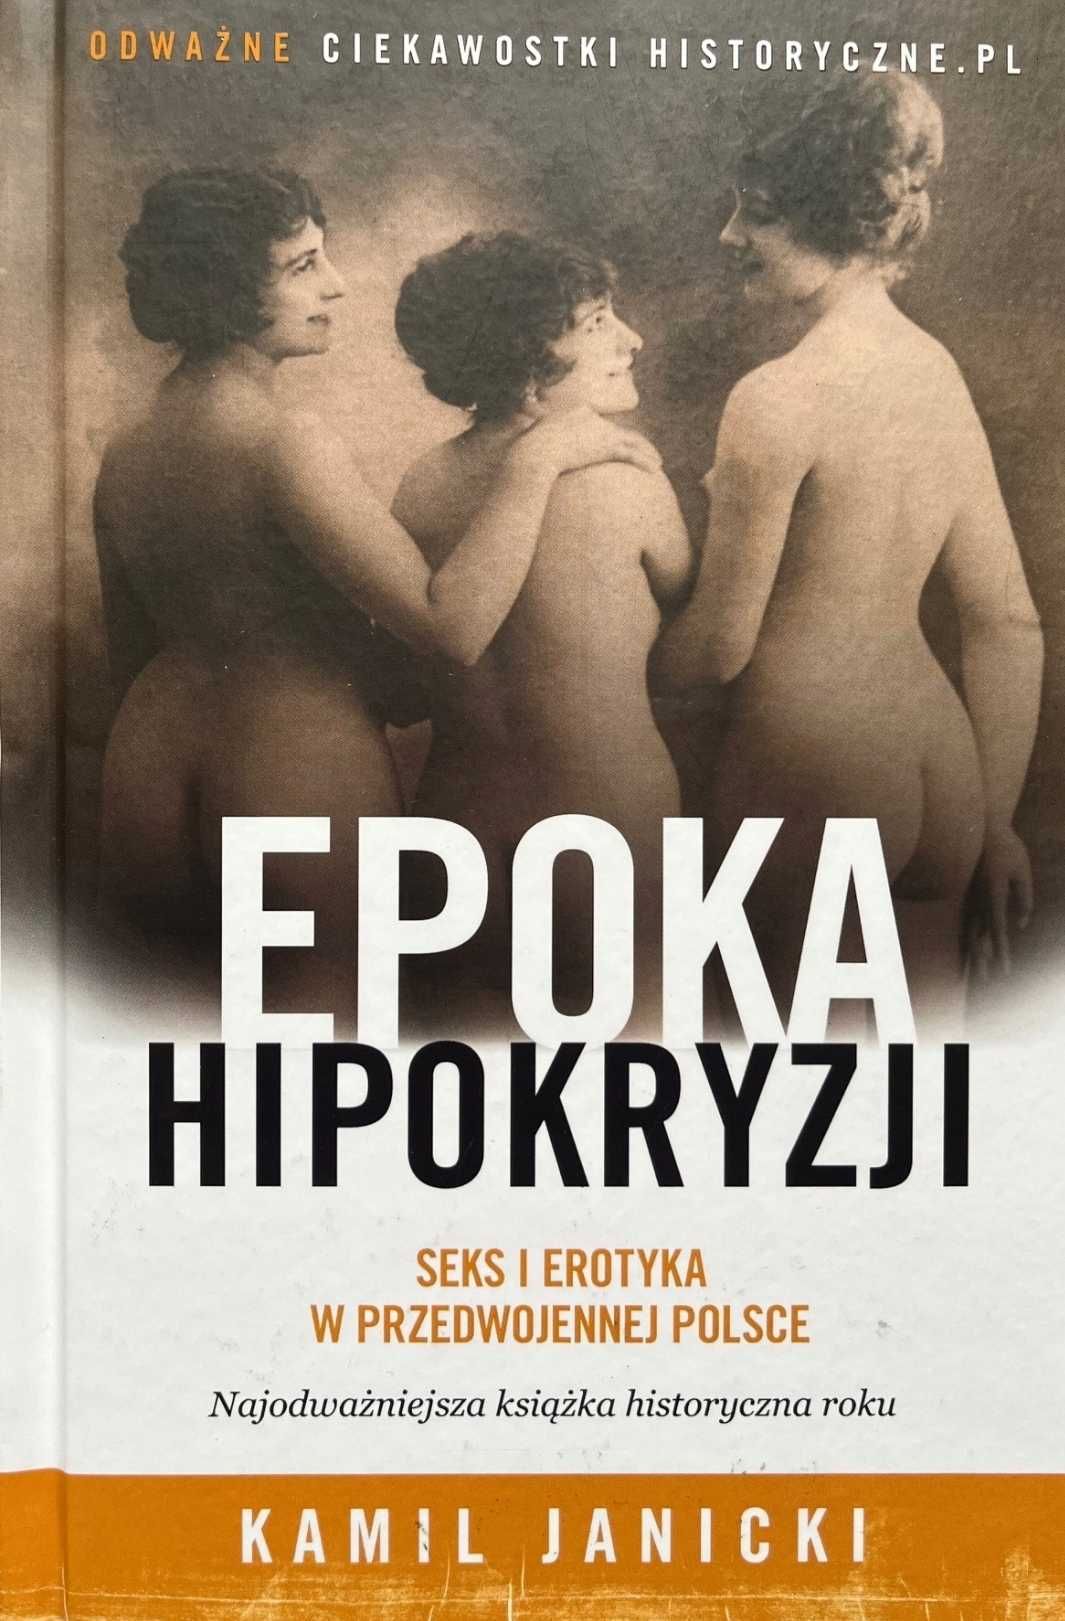 Epoka hipokryzji Seks i erotyka w przedwokennej Polsce. Kamil Janicki